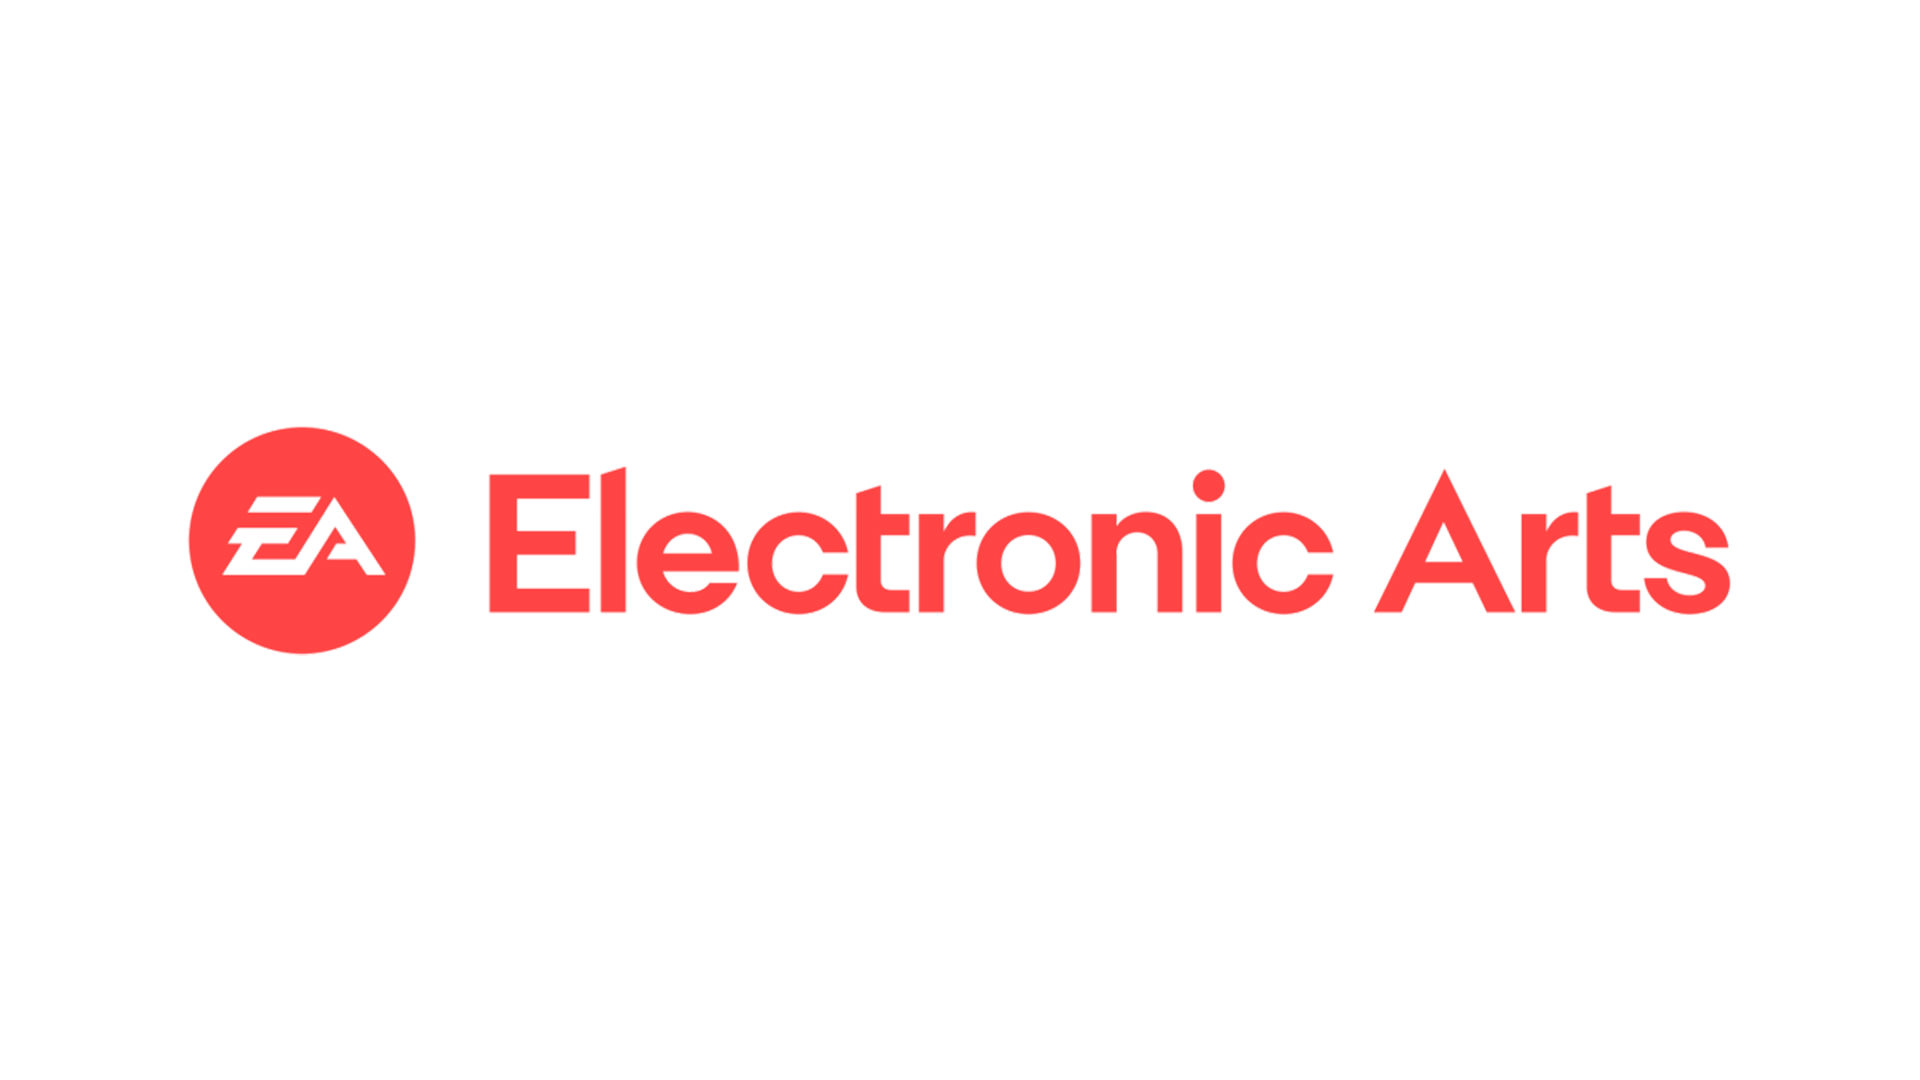 لوگو و نام شرکت الکترونیک آرتز بر روی پس زمینه سفید